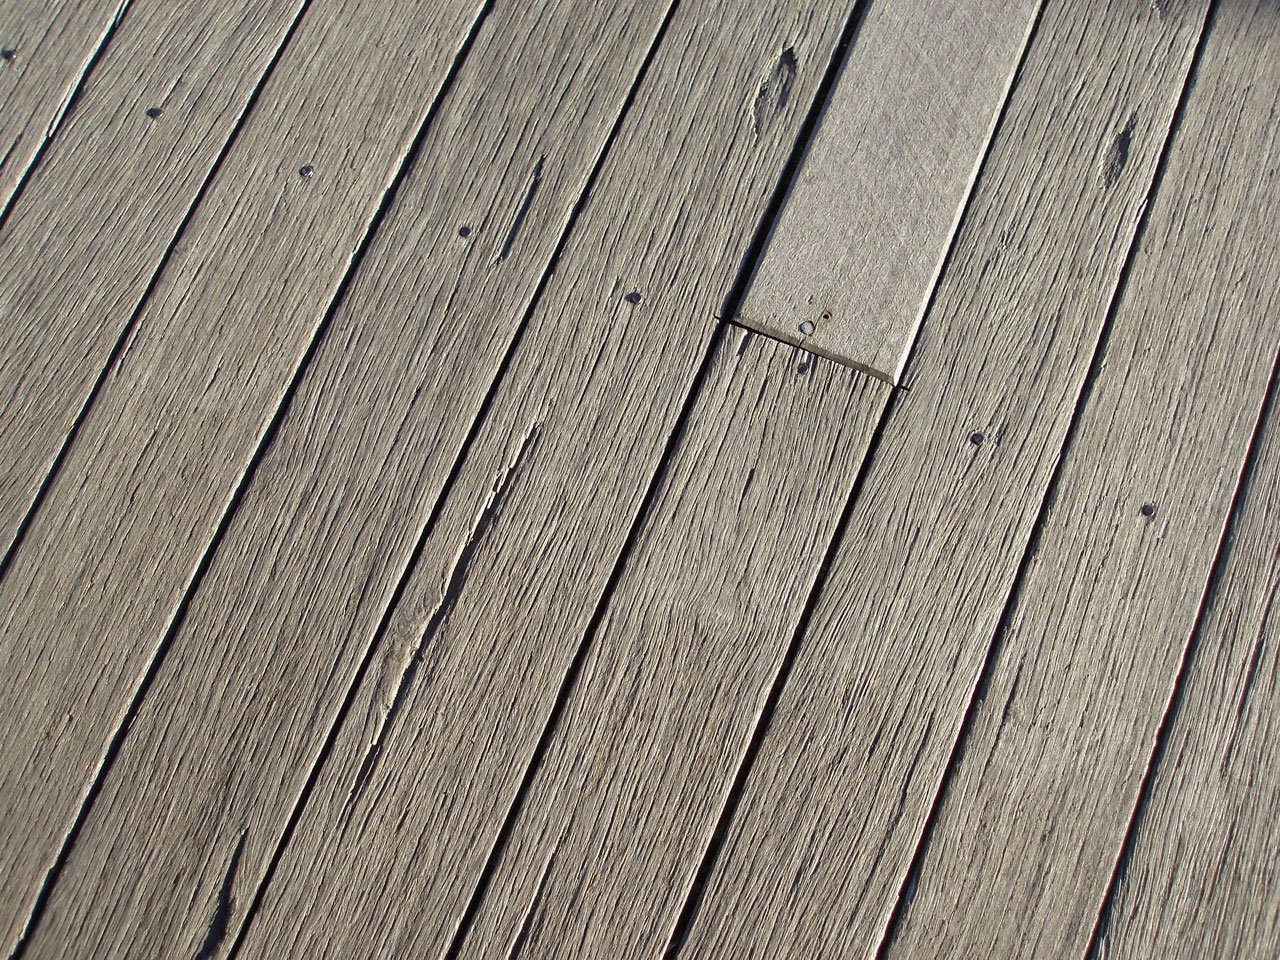 houten vloer verwijderen